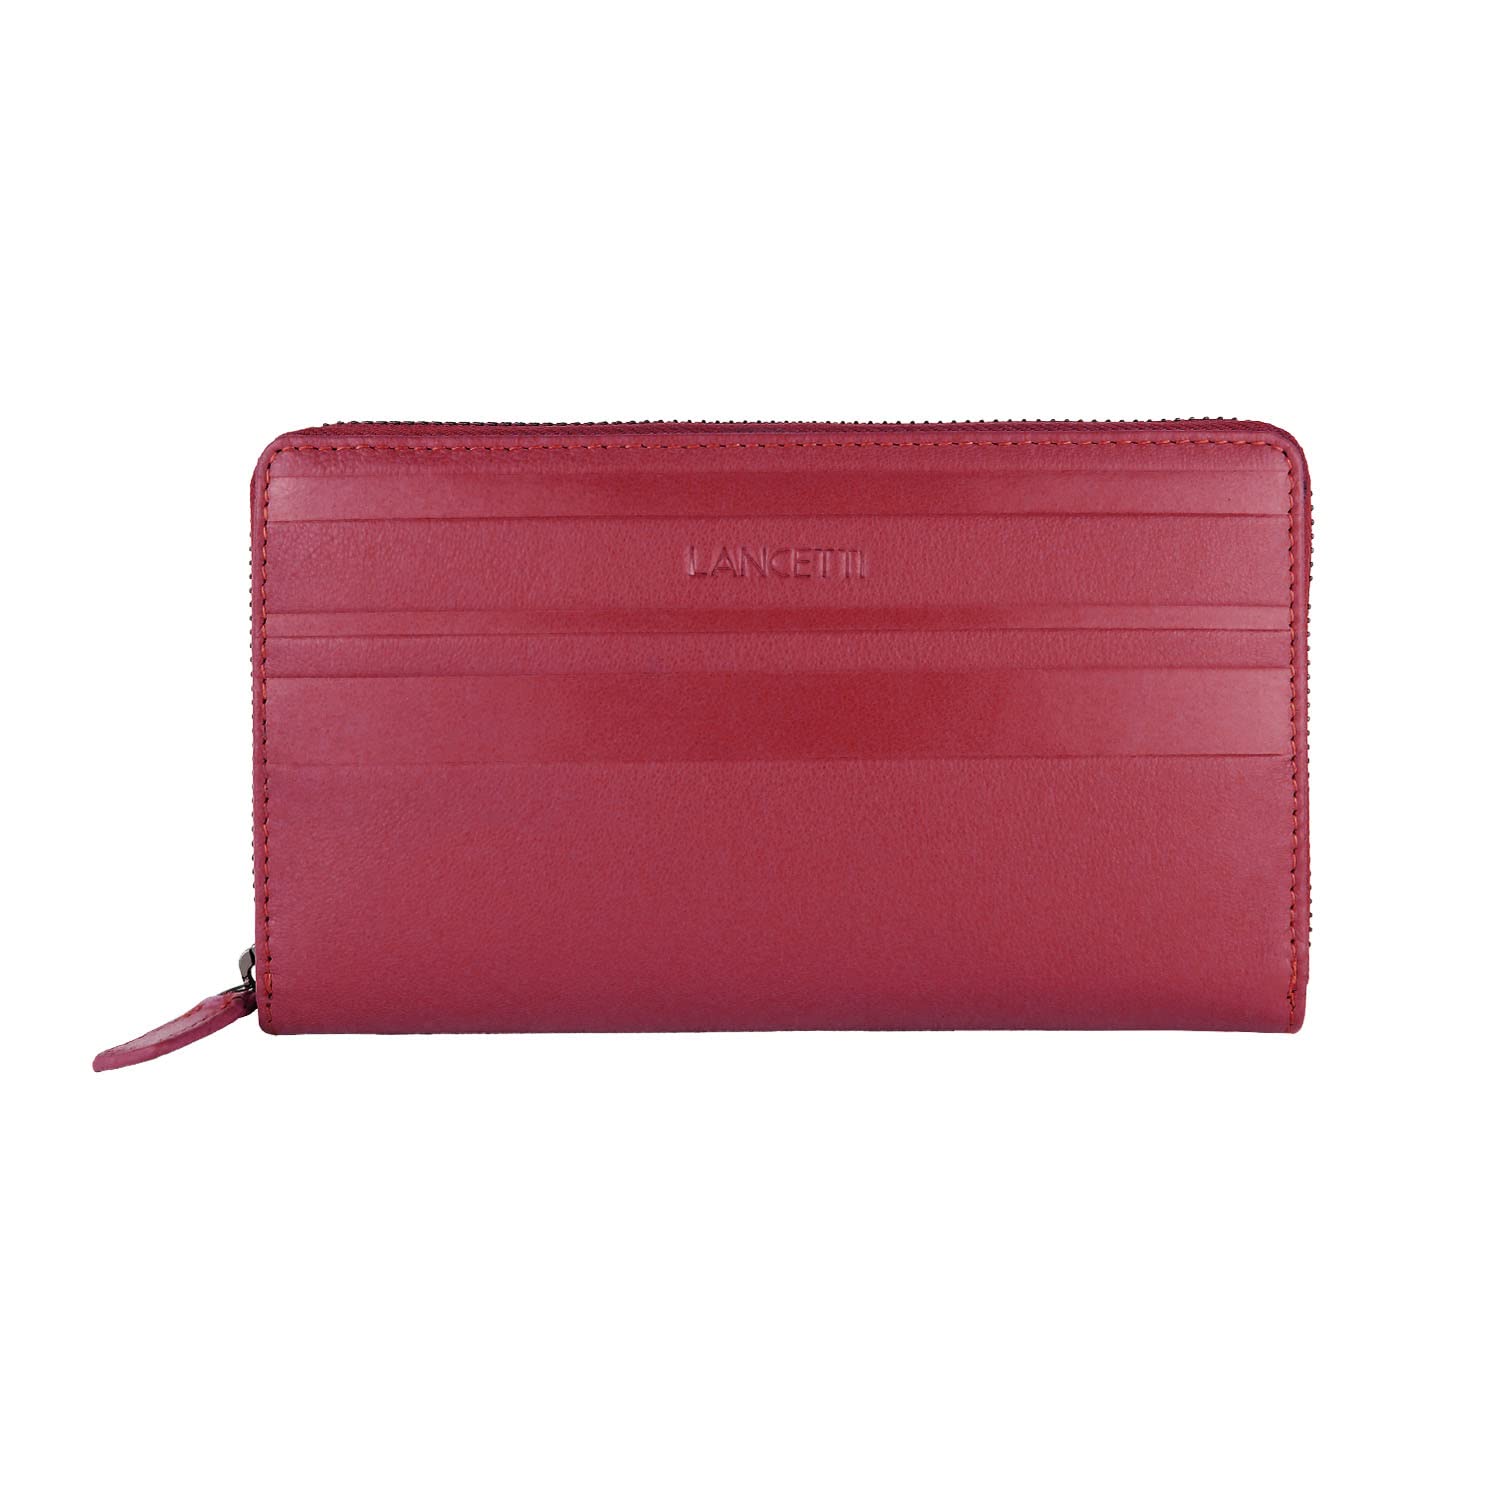 Lancetti Damen-Geldbörse aus echtem Leder, geräumig mit Geschenkbox, Rot 38